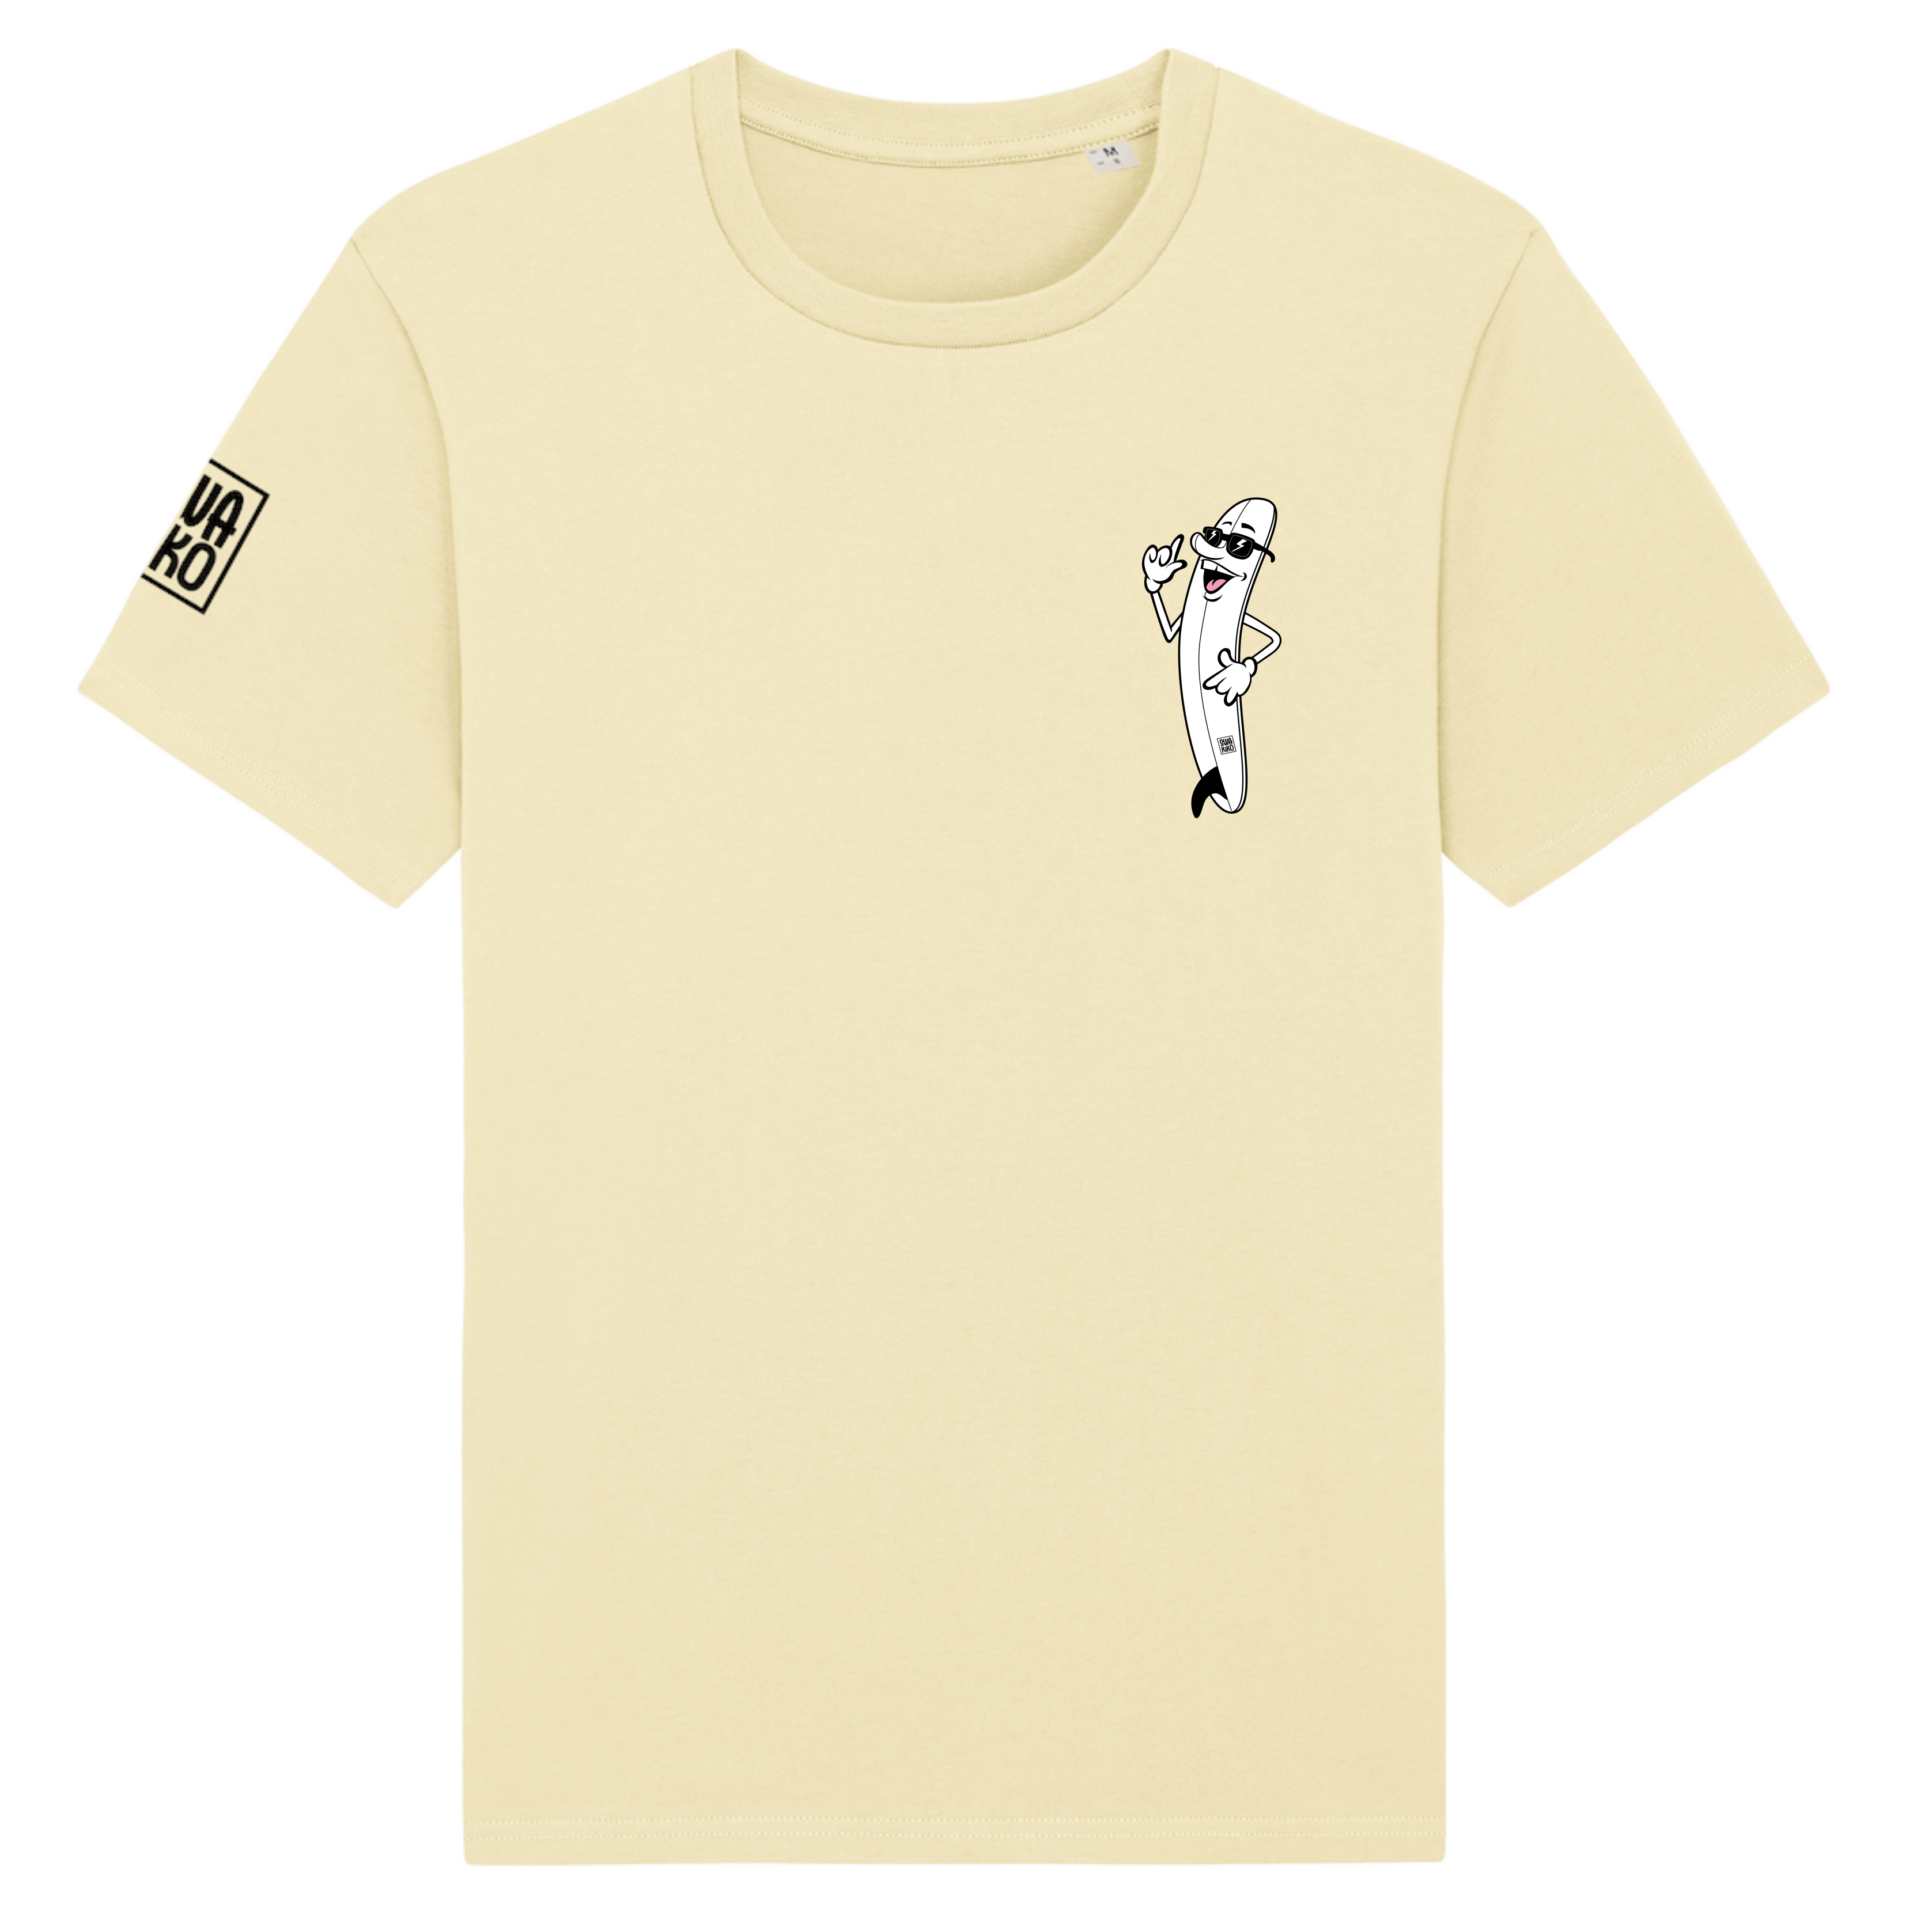 Voorkant van een geel T-shirt met op de borst een cartoon van een lachend Surfboard met SWAKiKO logo